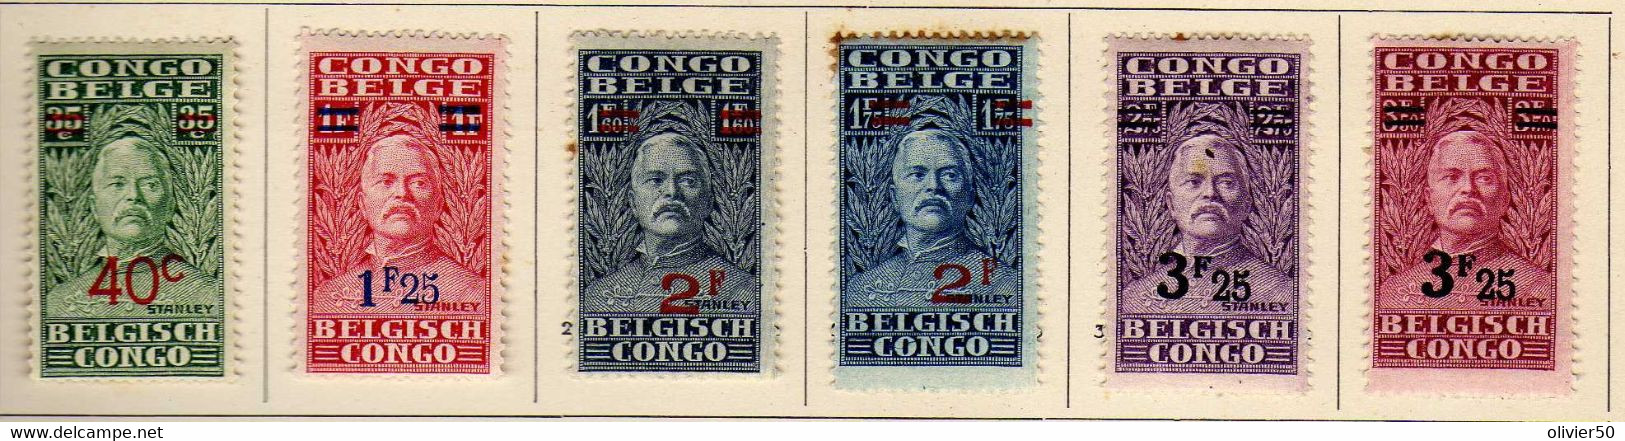 Congo Belge (1931) - Stanley Surcharges - Neufs* - MH - Ongebruikt